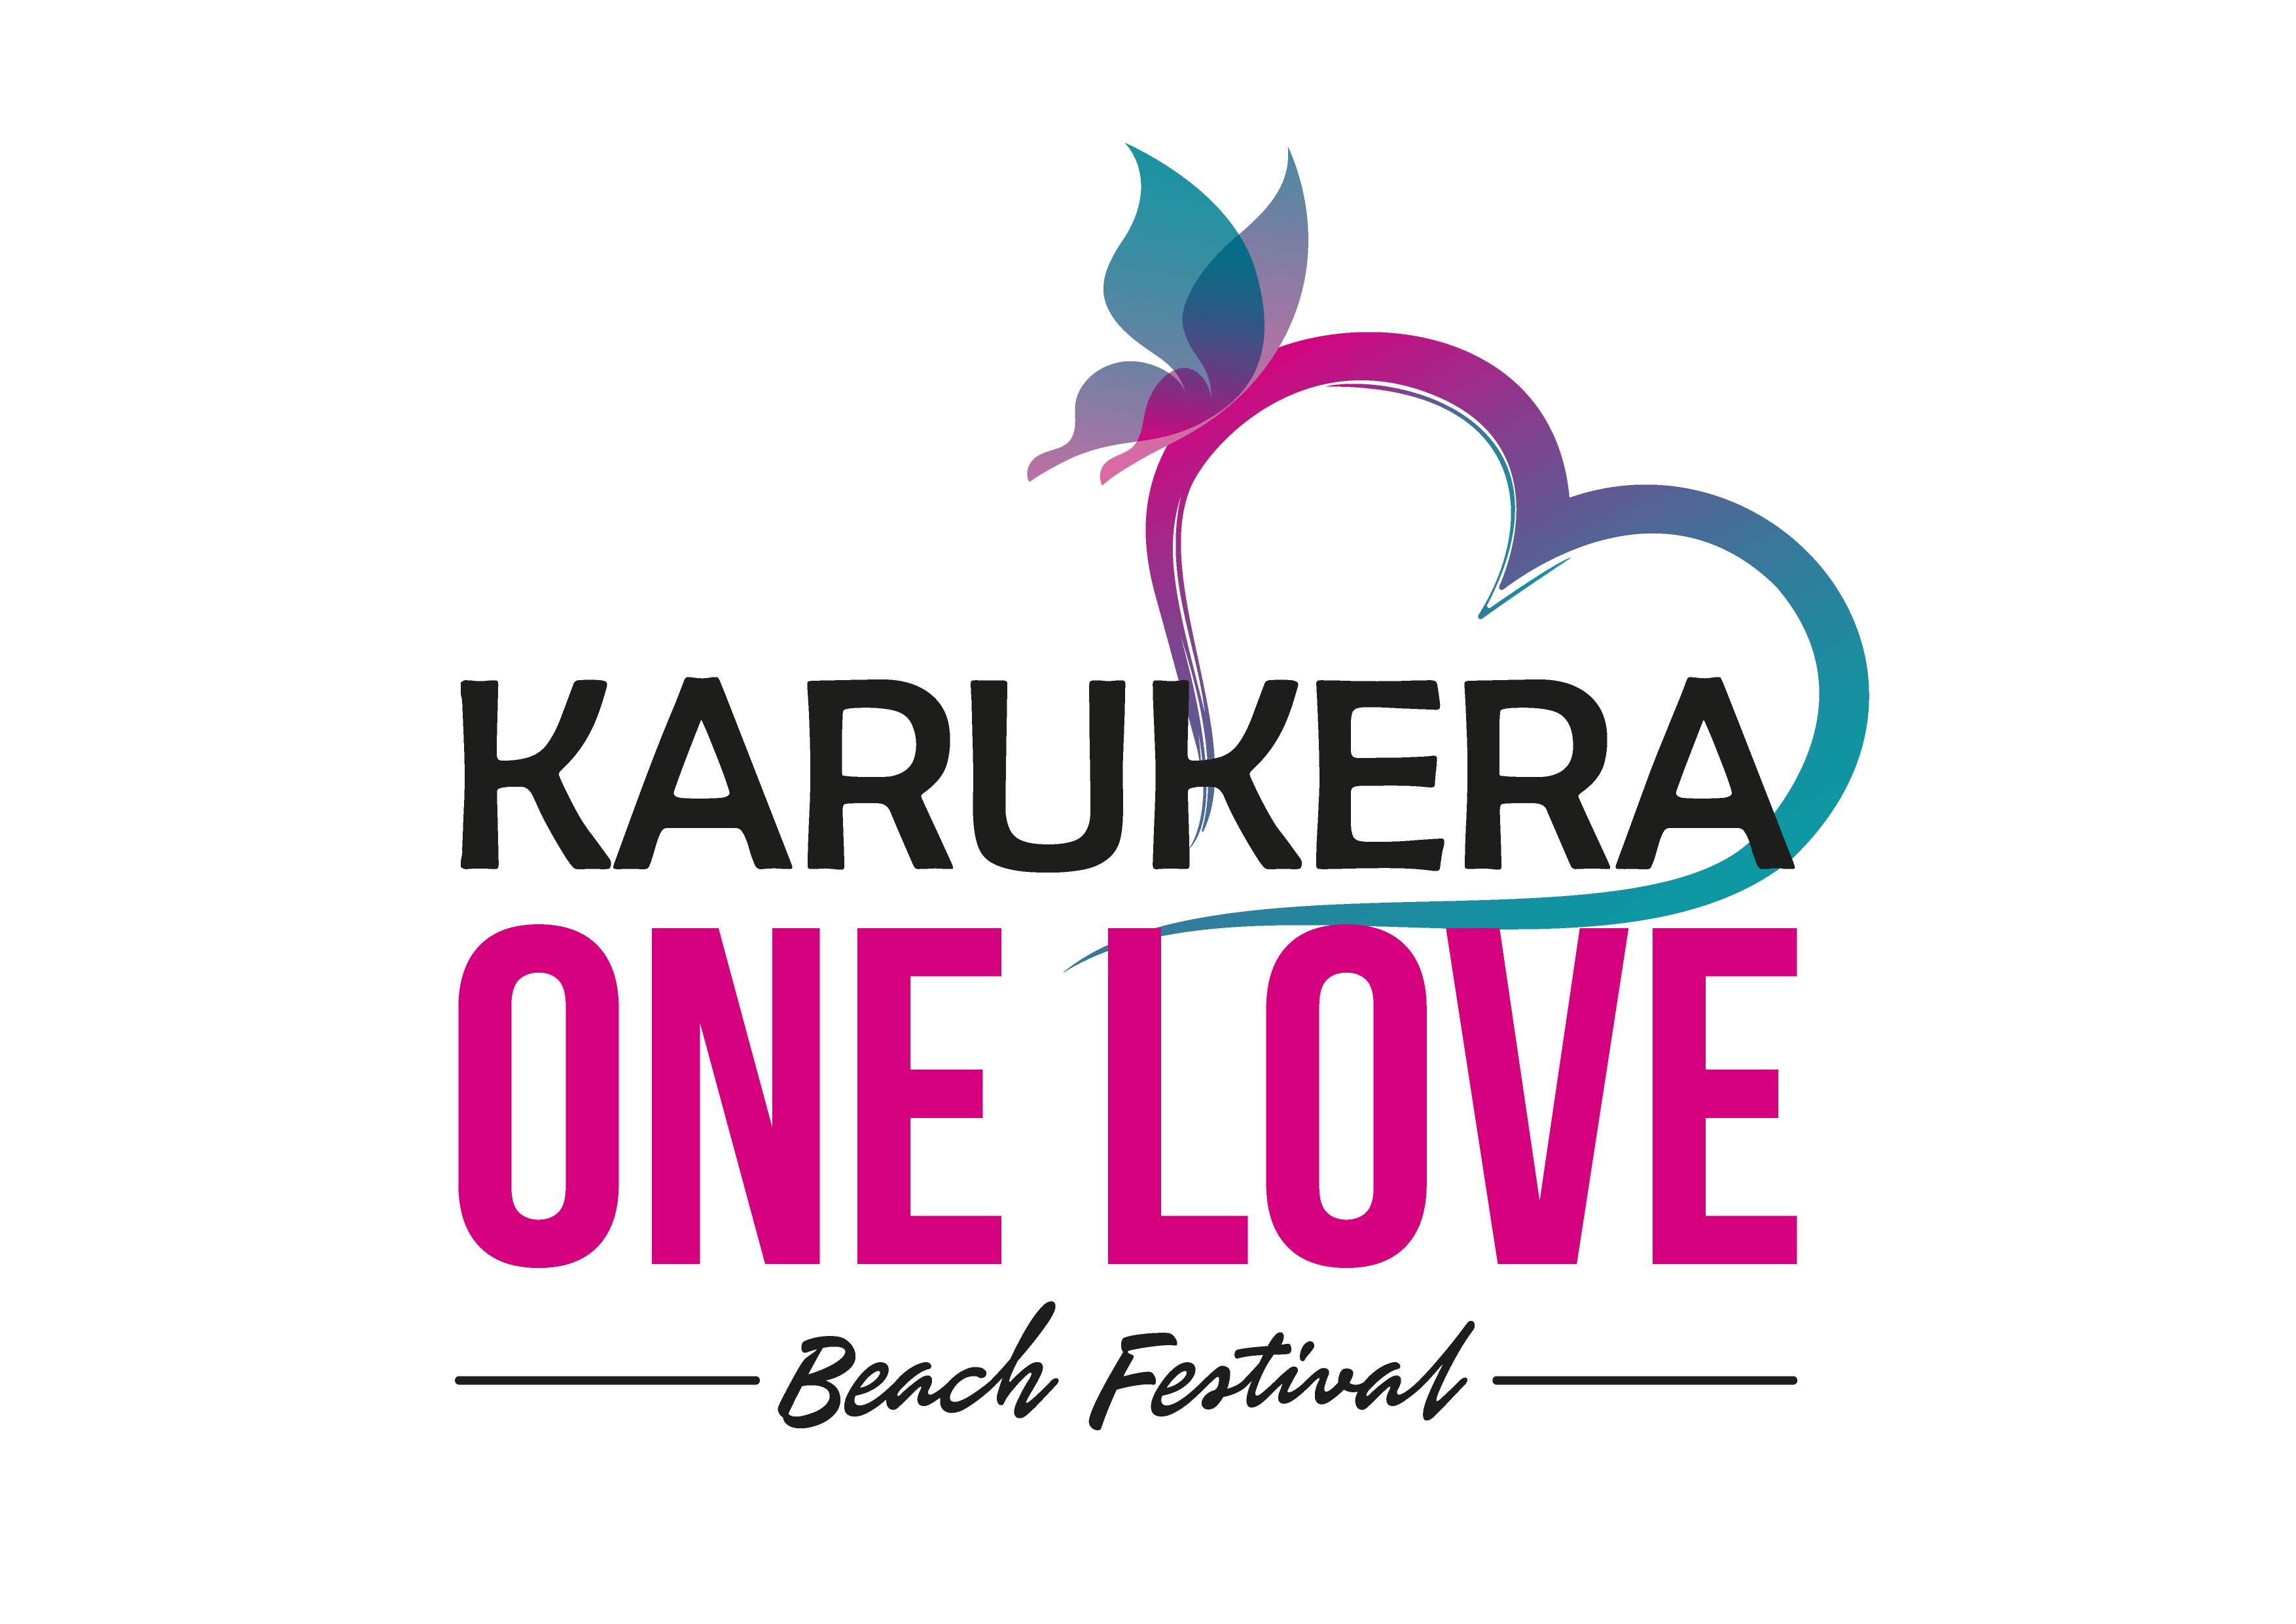 Karukera One Love